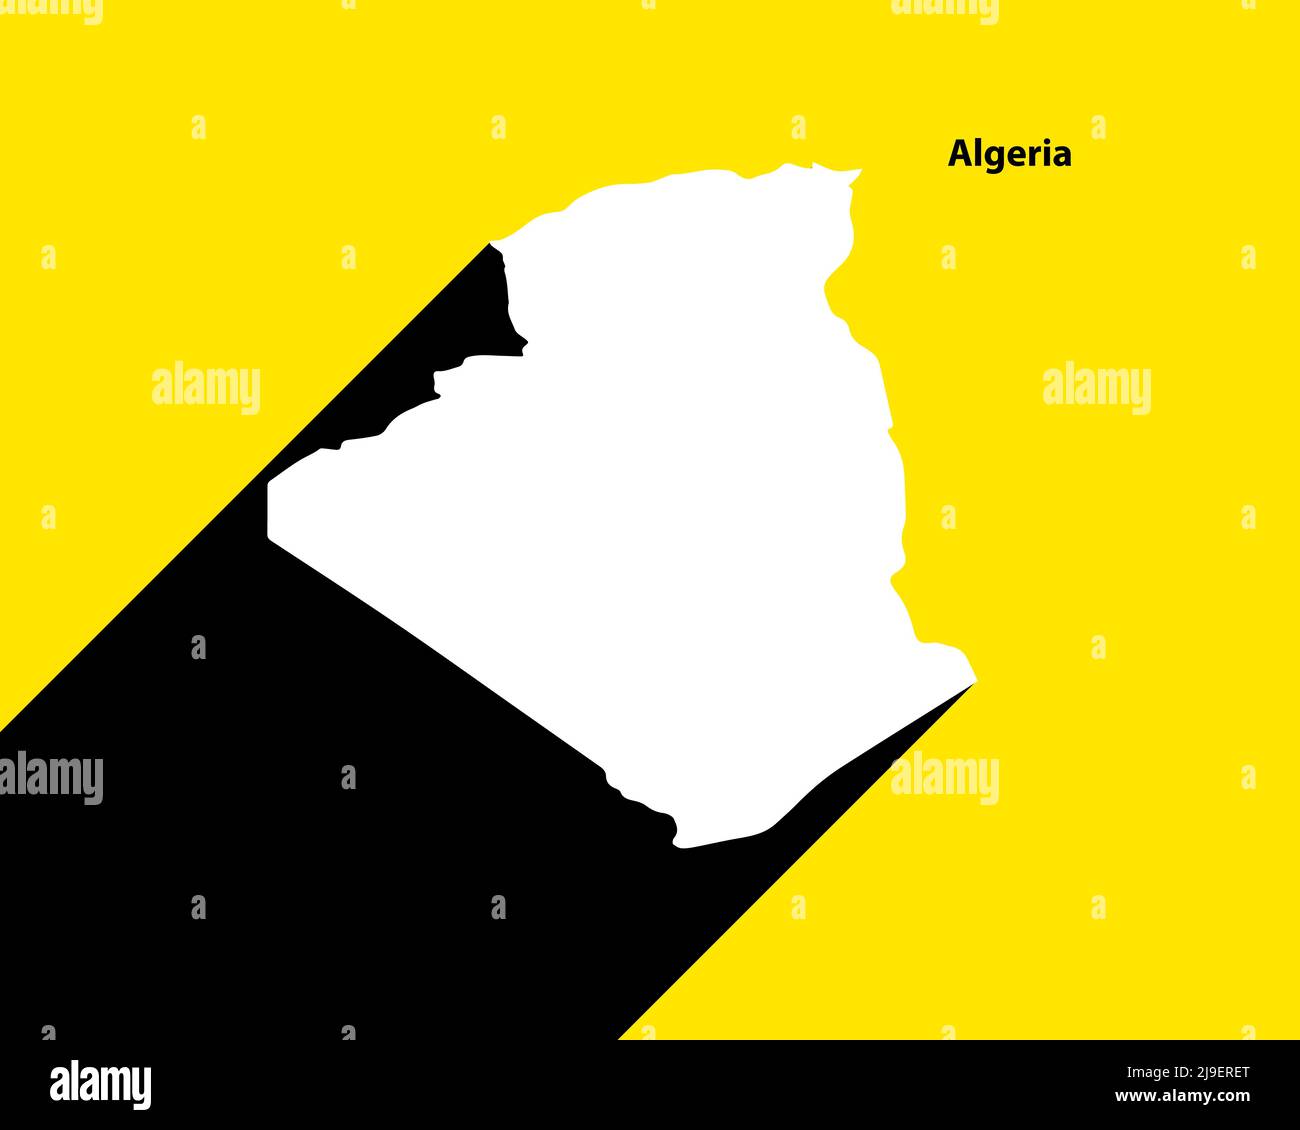 Argelia Mapa en cartel retro con larga sombra. Signo vintage Fácil de editar, manipular, cambiar de tamaño o colorear. Ilustración del Vector